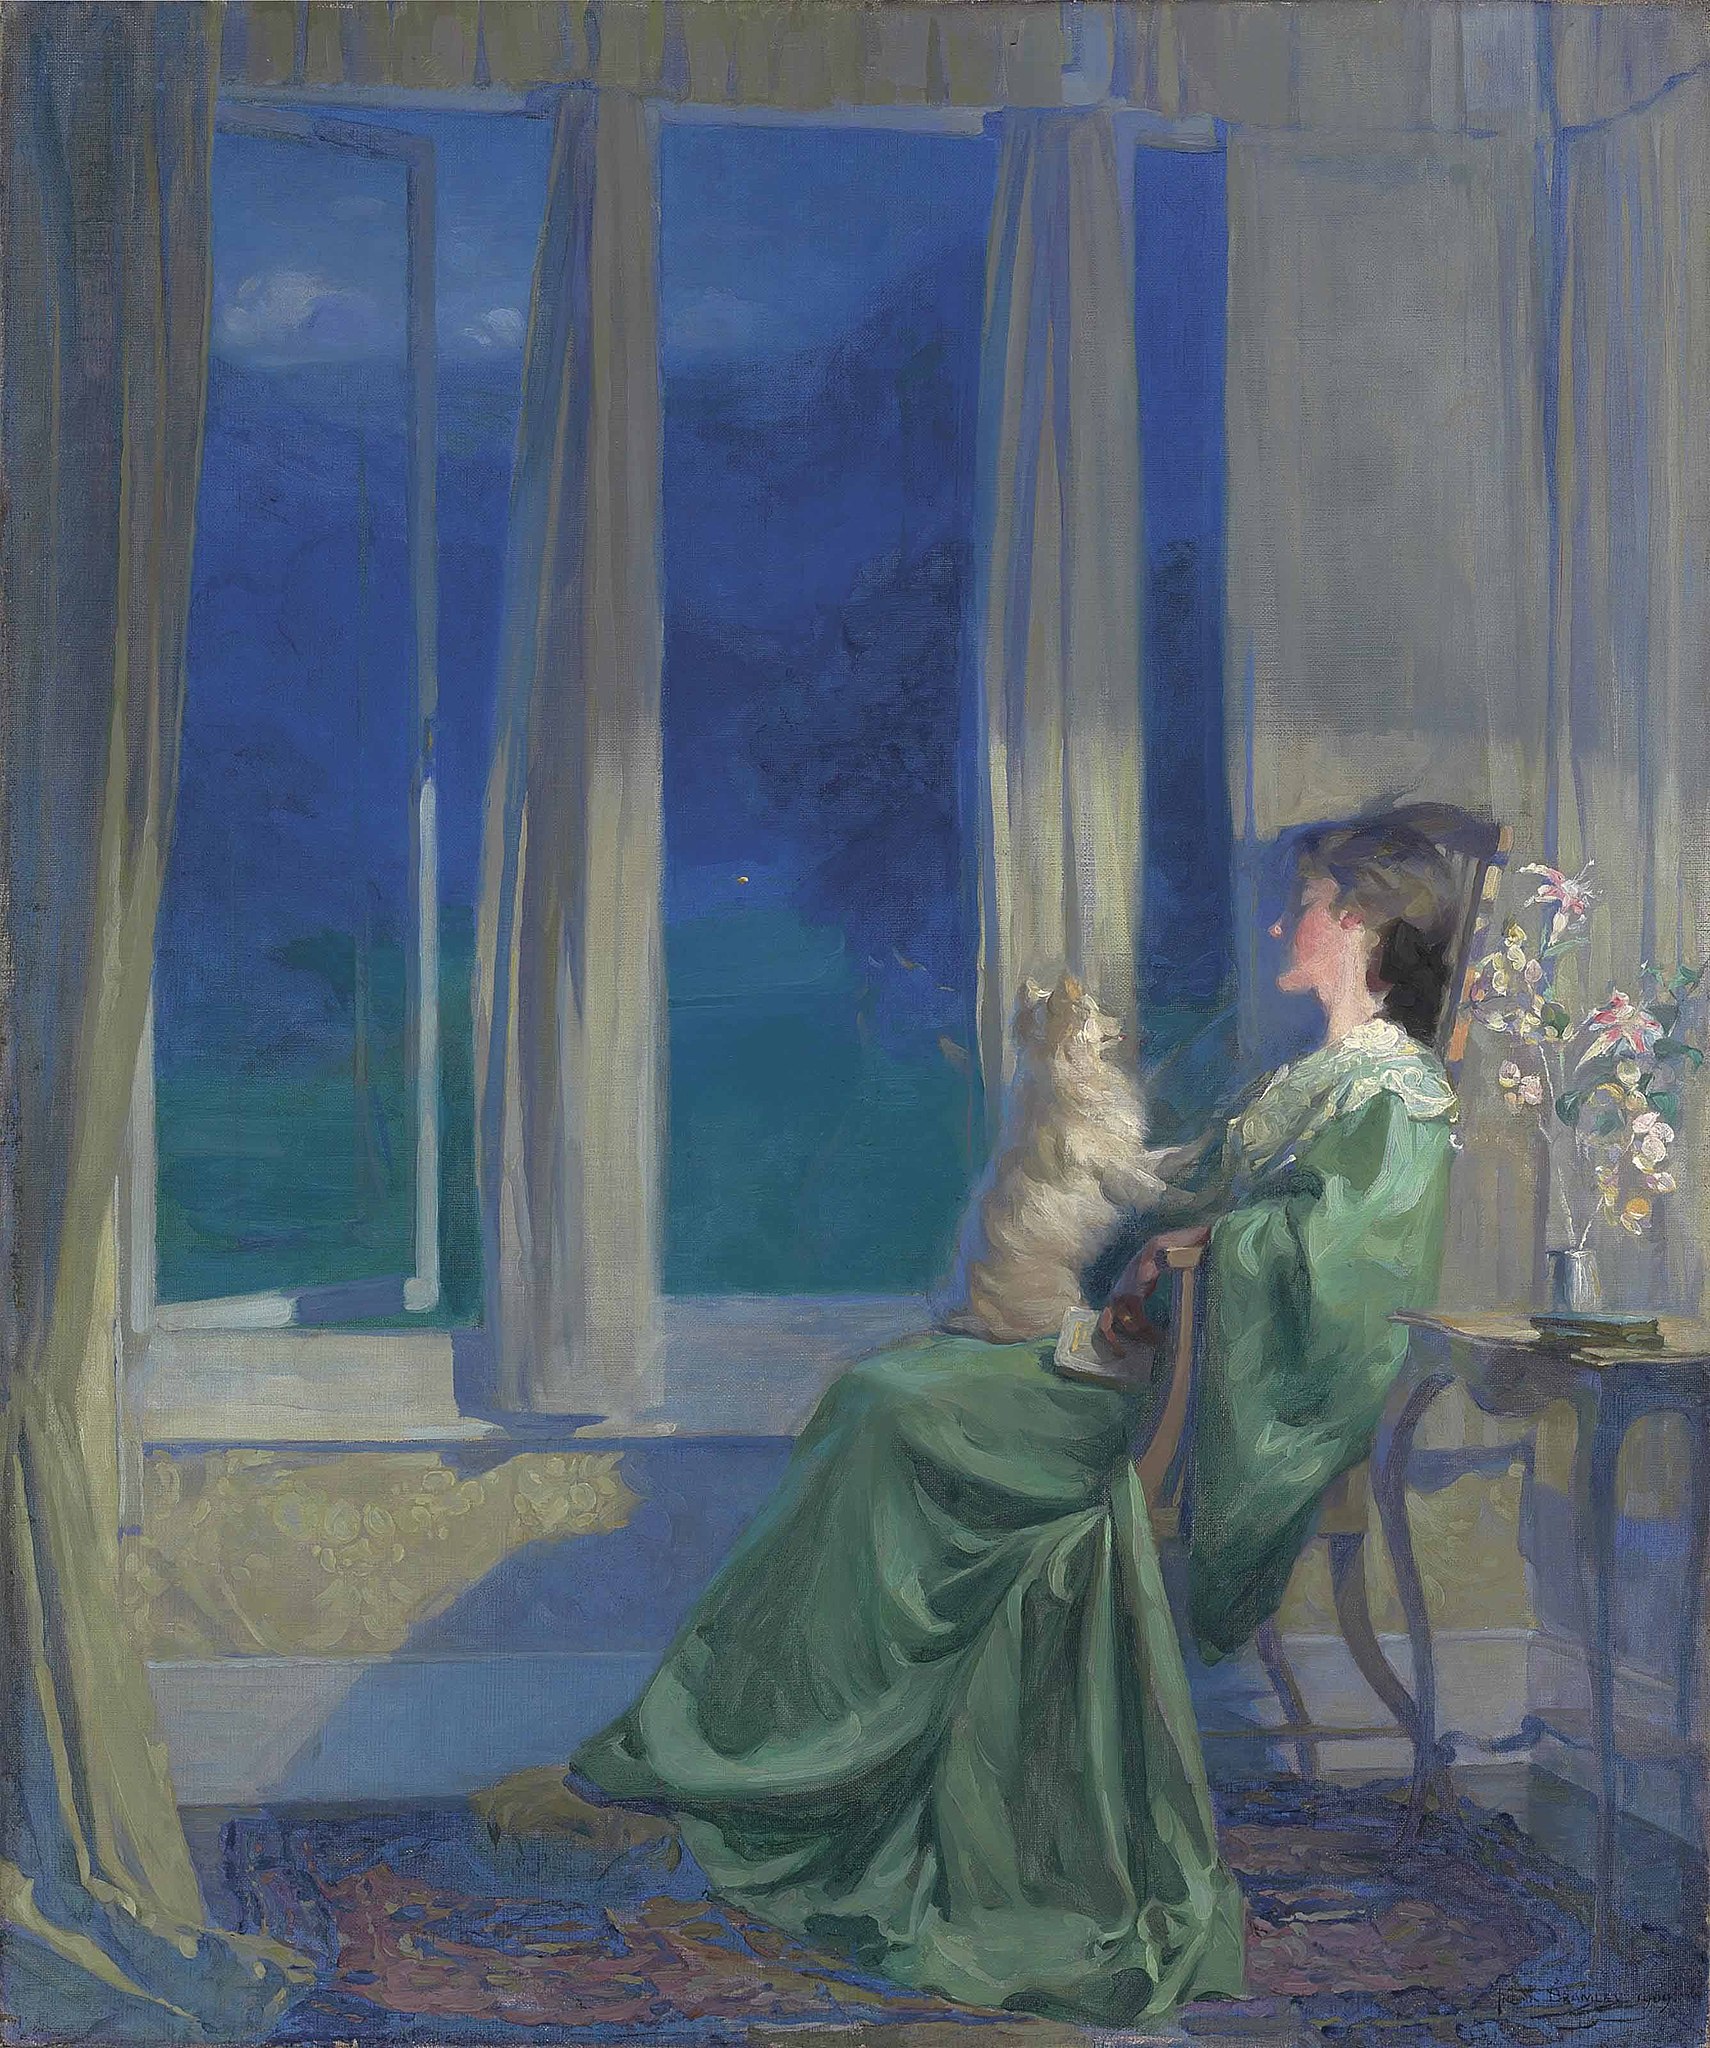 Când se lasă încet seara albastră by Frank Bramley - 1909 - 90.8 x 76.8 cm 